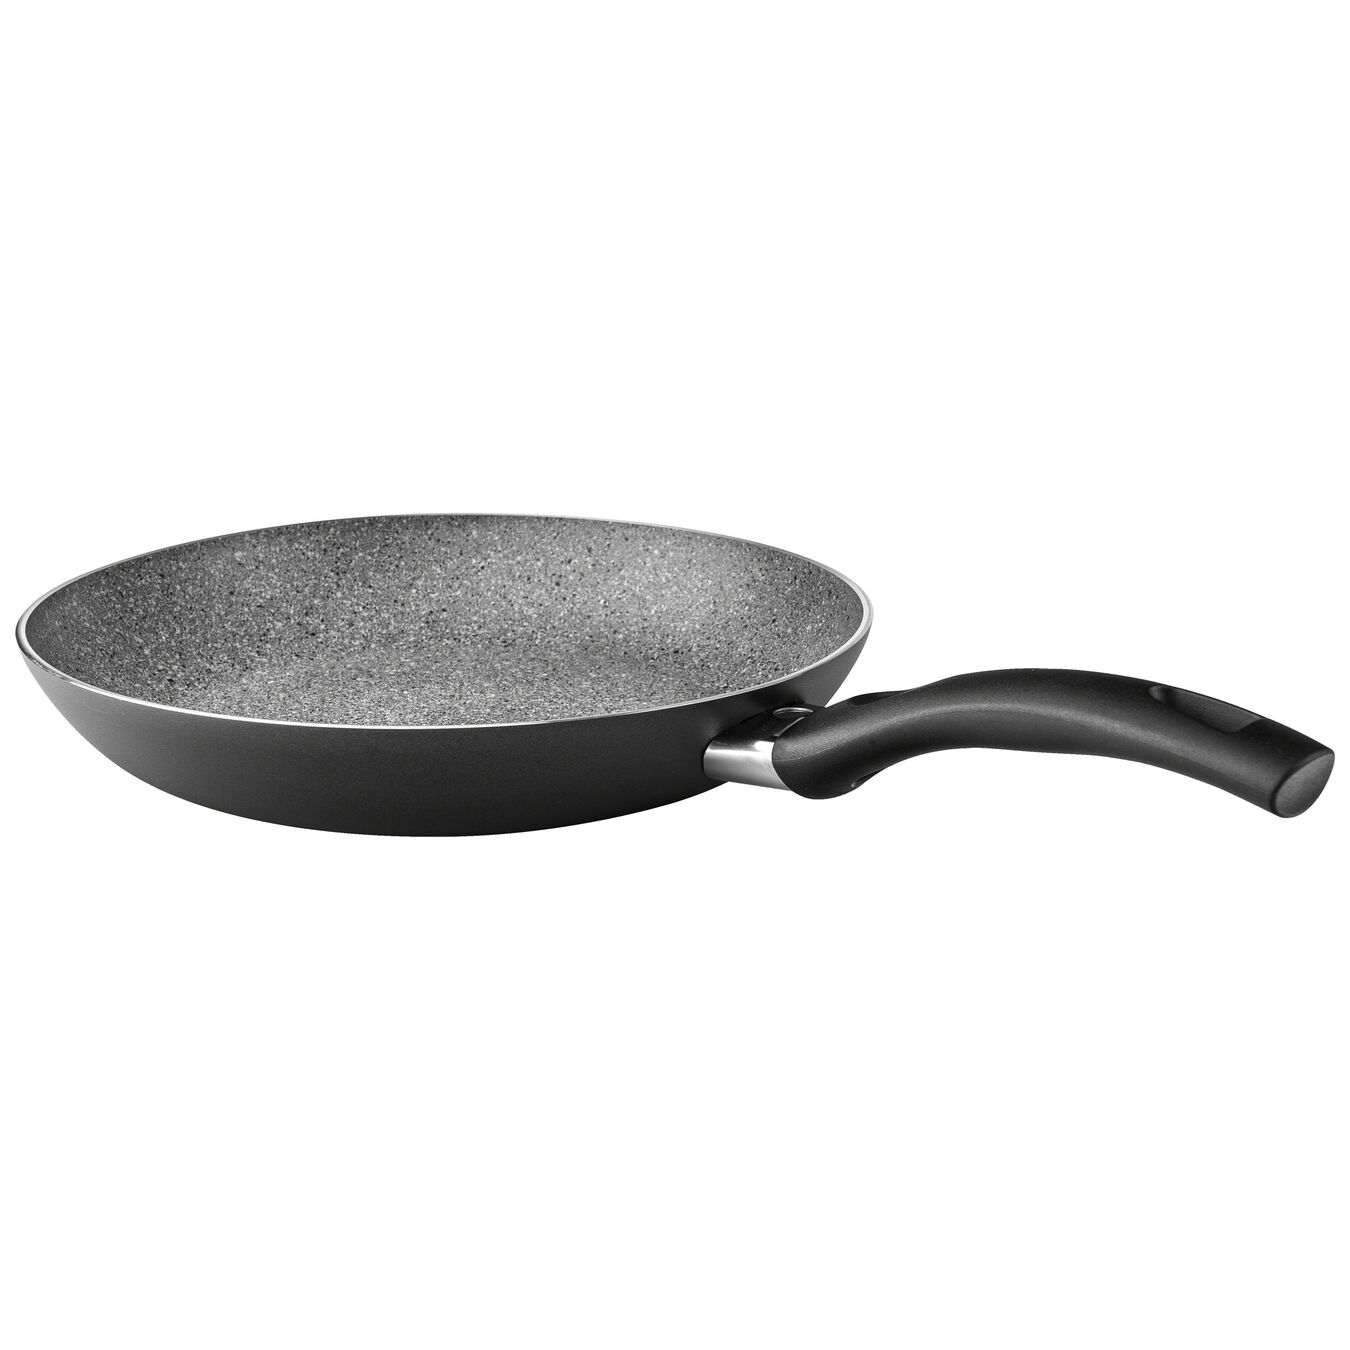 20 cm Aluminium Frying pan black,,large 1